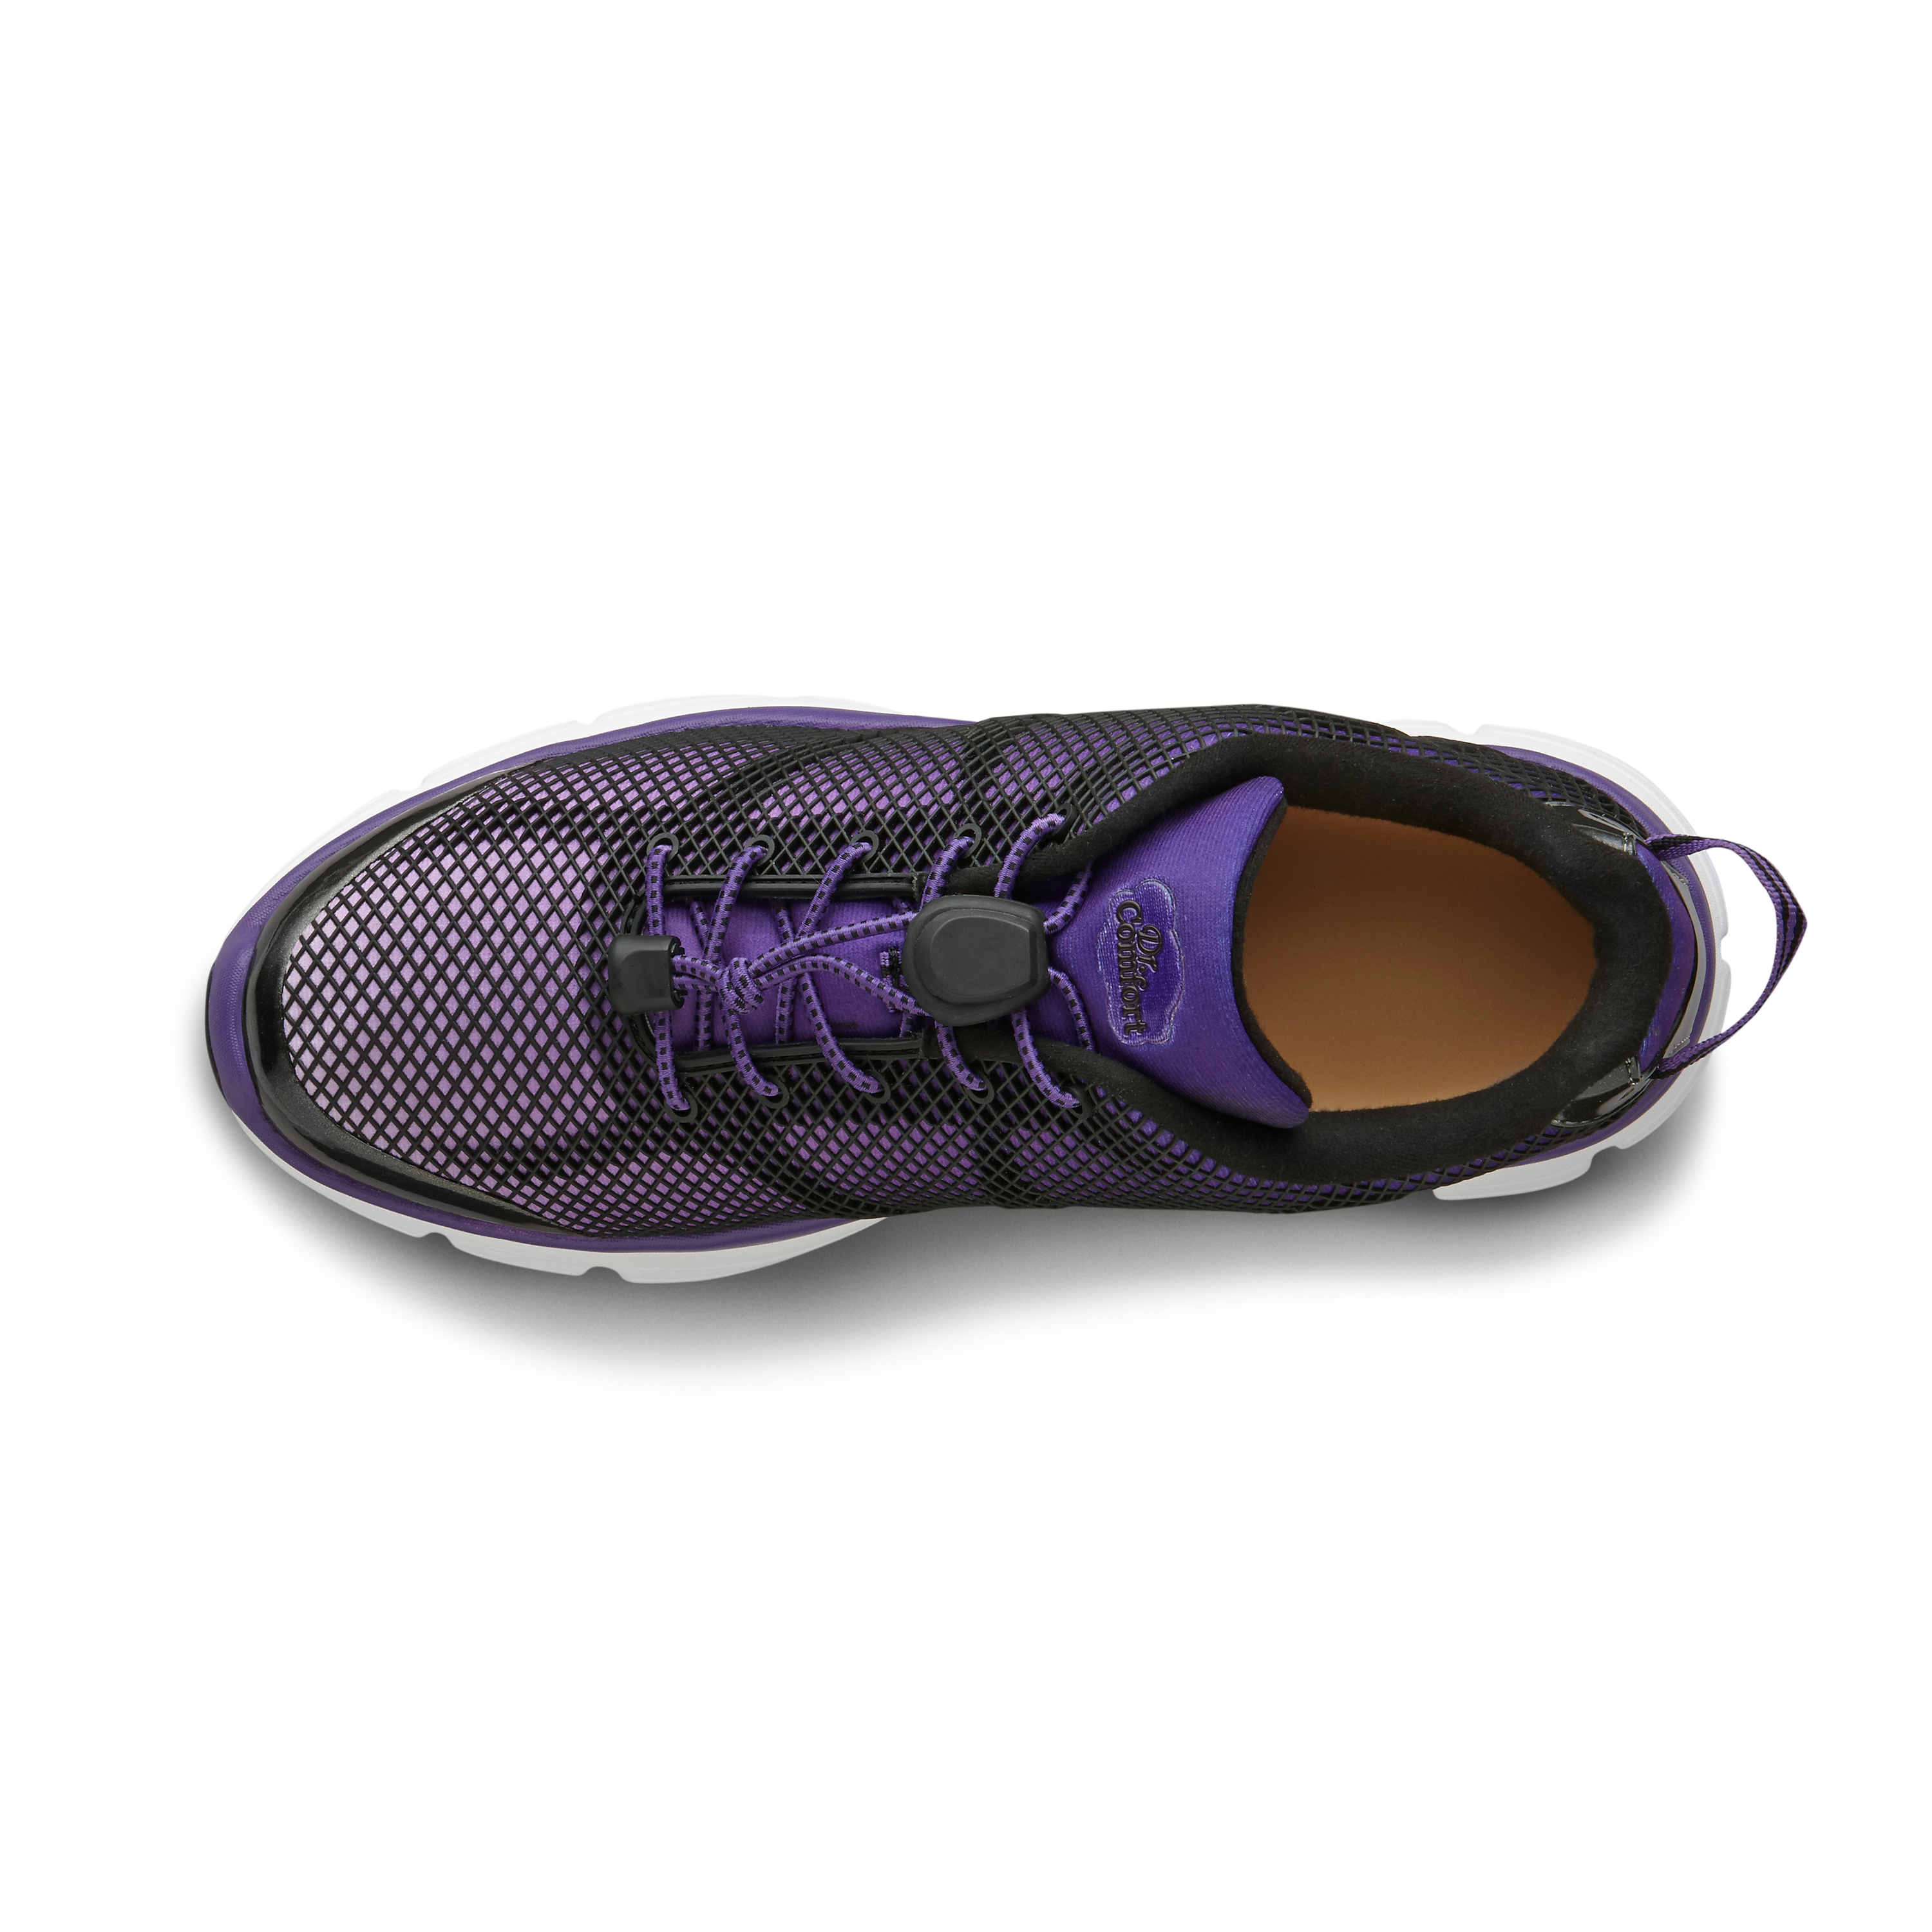 Zusatzbild DR. COMFORT® Katy lila, oben, Orthopädische Schuhe, Besonders weicher und leichter Freizeit- und Aktivschuh